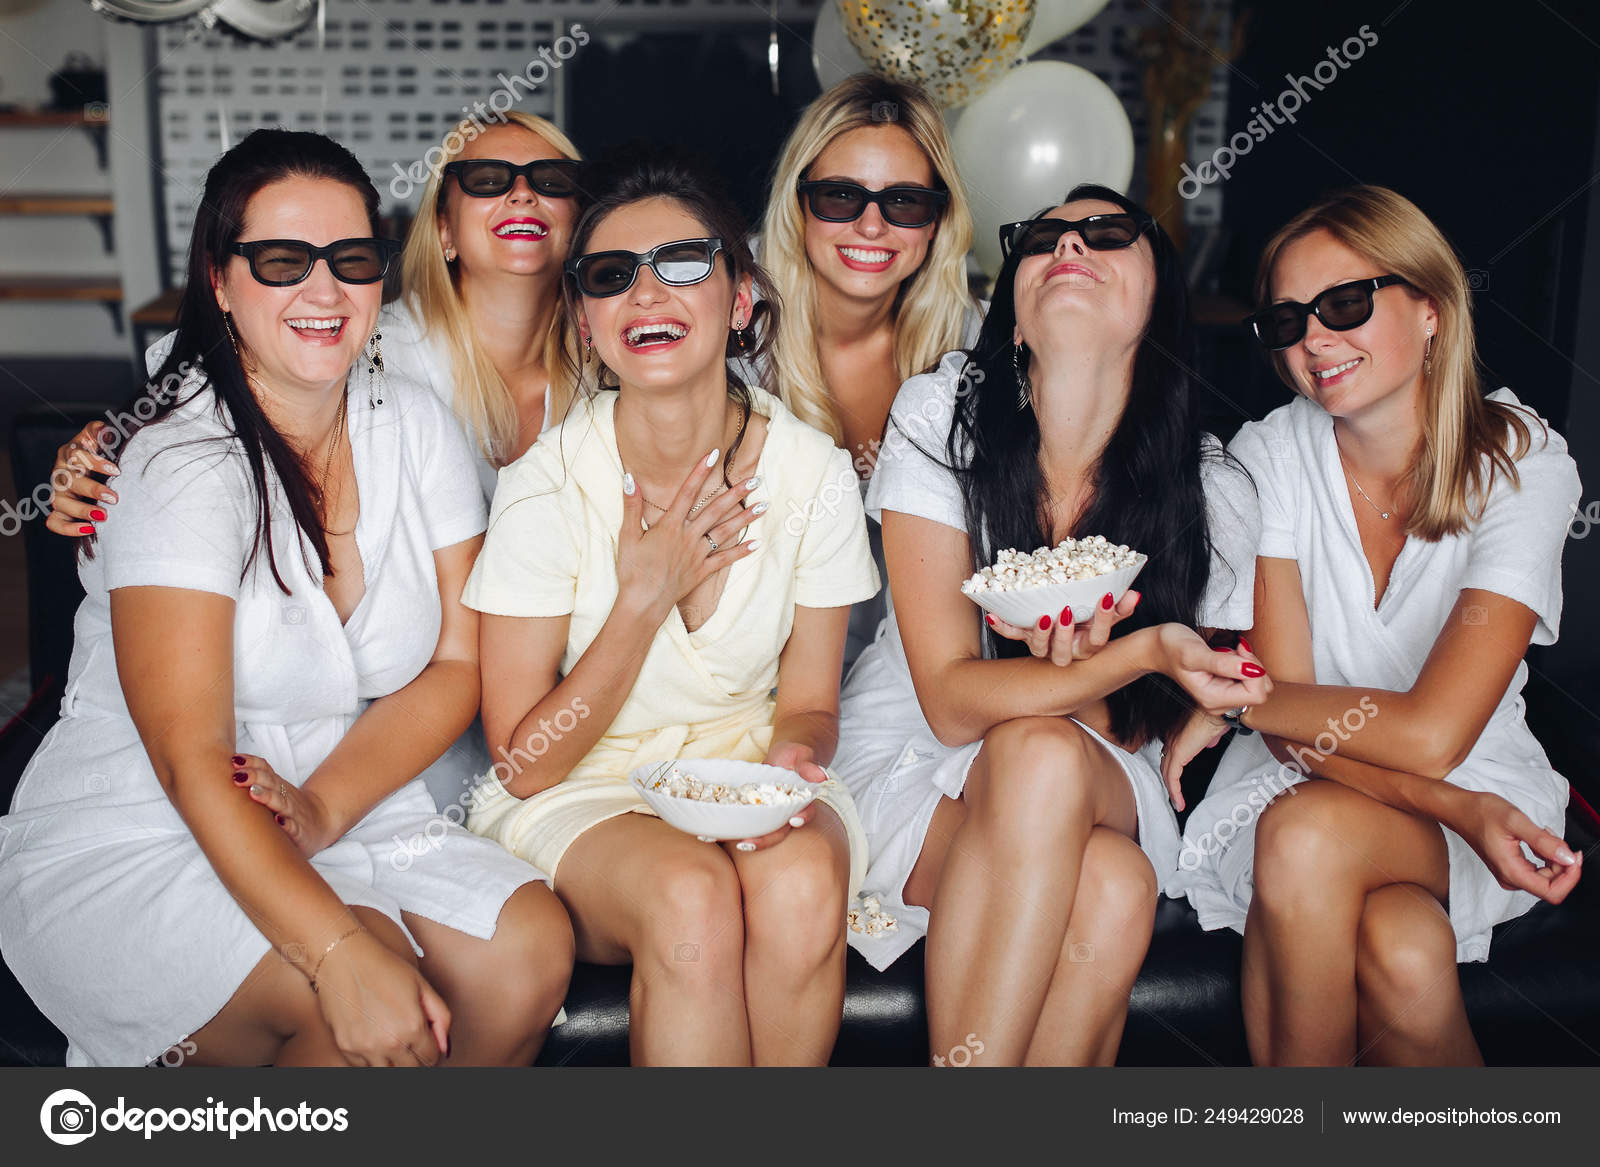 Jovem noiva tirando selfie com damas de honra durante a festa de